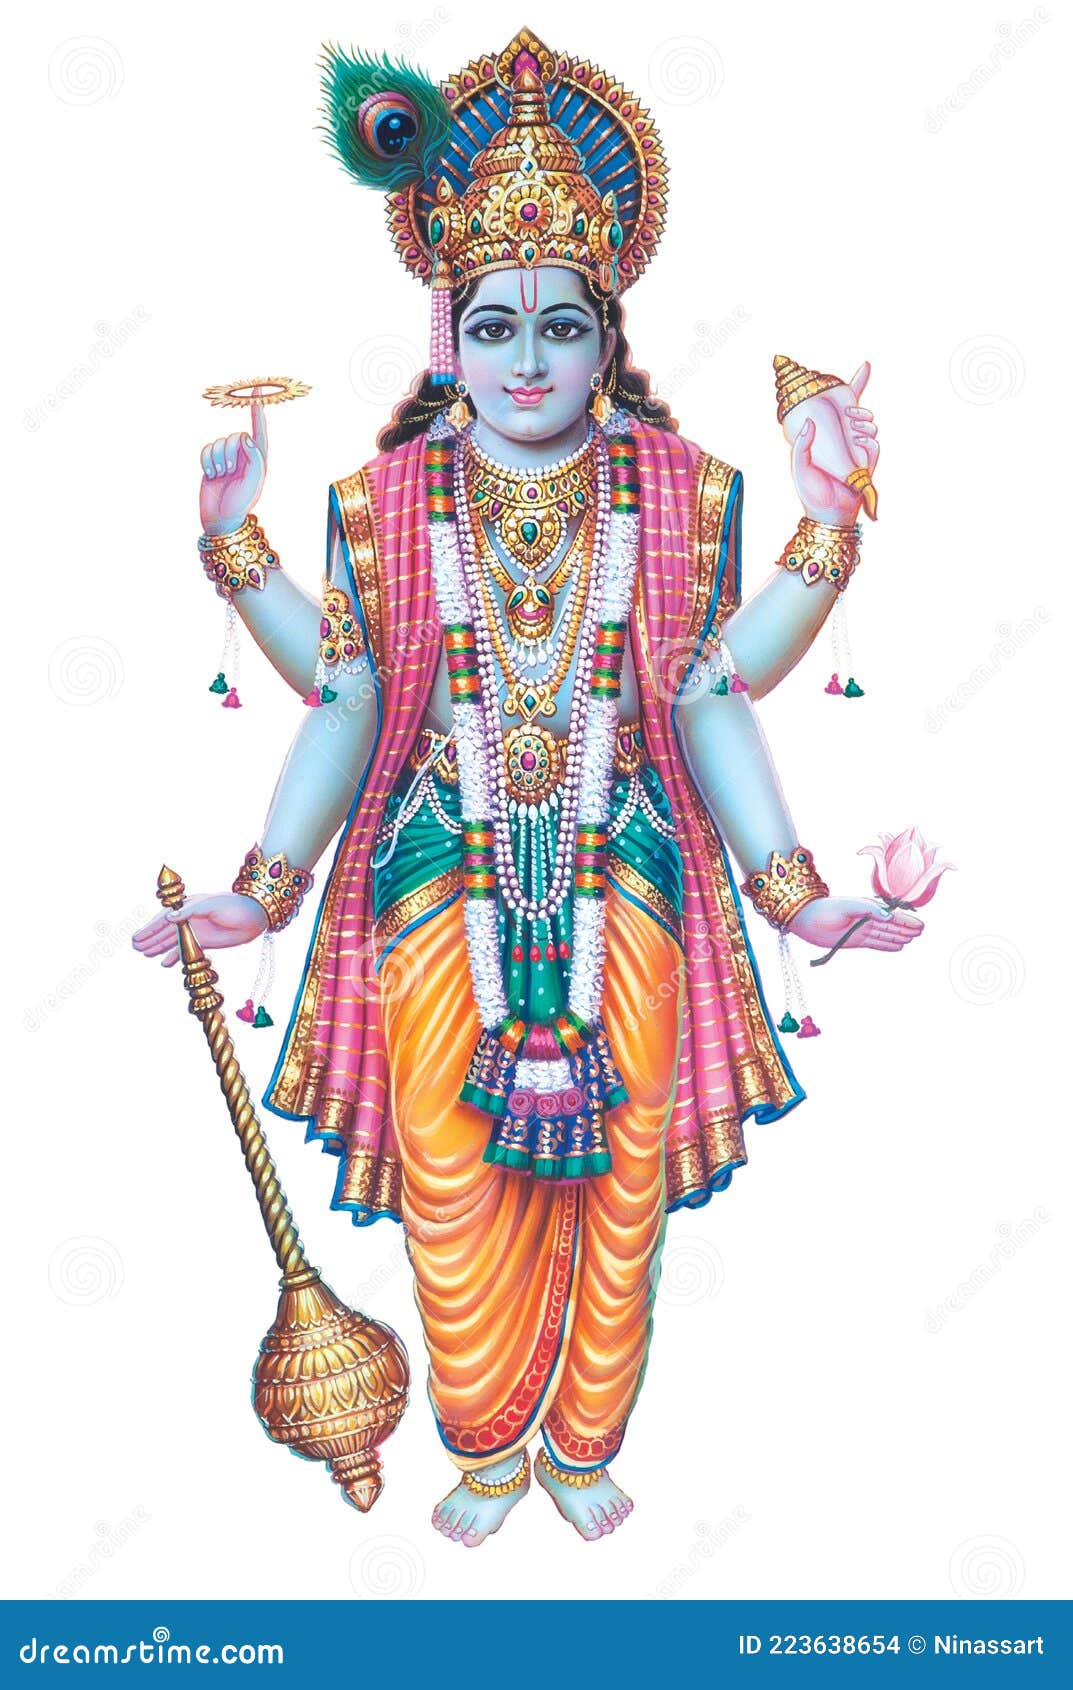 High-Resolution Digital Paintings of Lord Murlidhar Krishna in ...